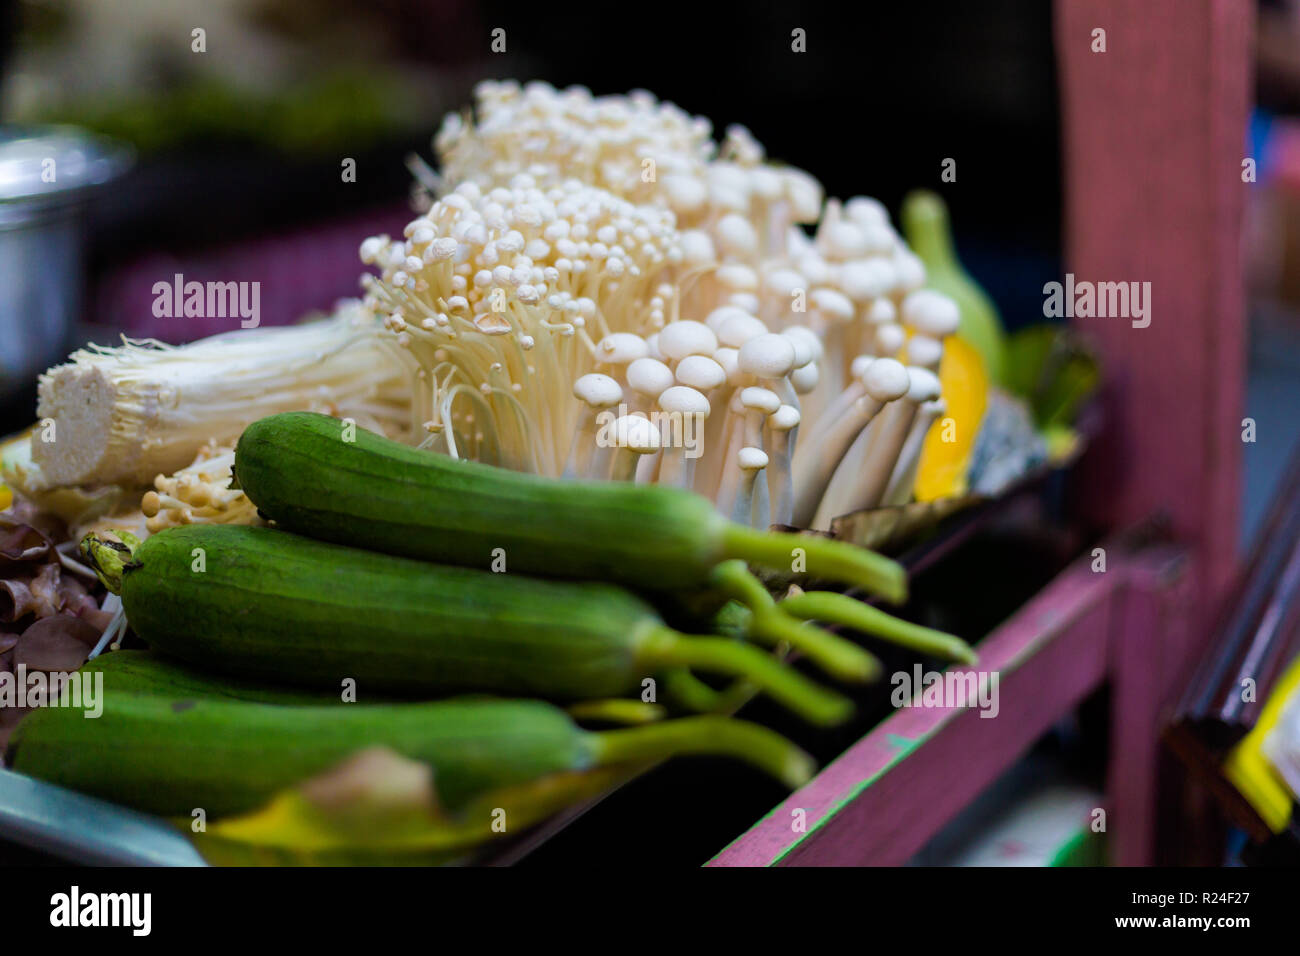 Les courgettes et champignons frais de l'aiguille sur le marché local à Bangkok. Thaï traditionnel d'ingrédients frais. Banque D'Images